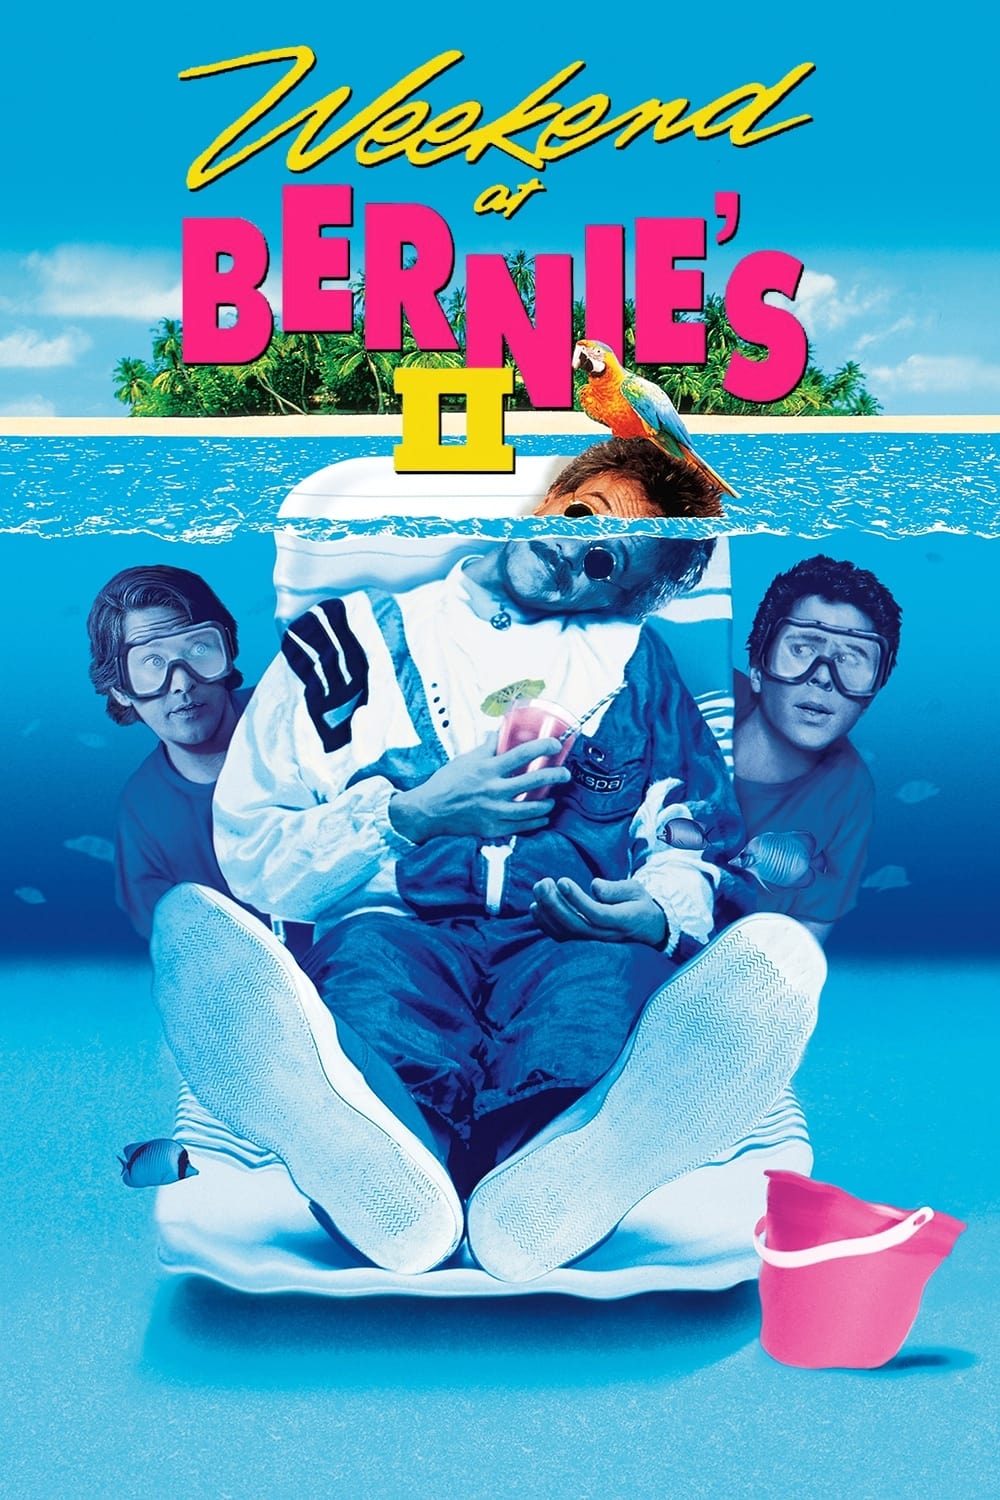 Weekend at Bernie's II (1993)